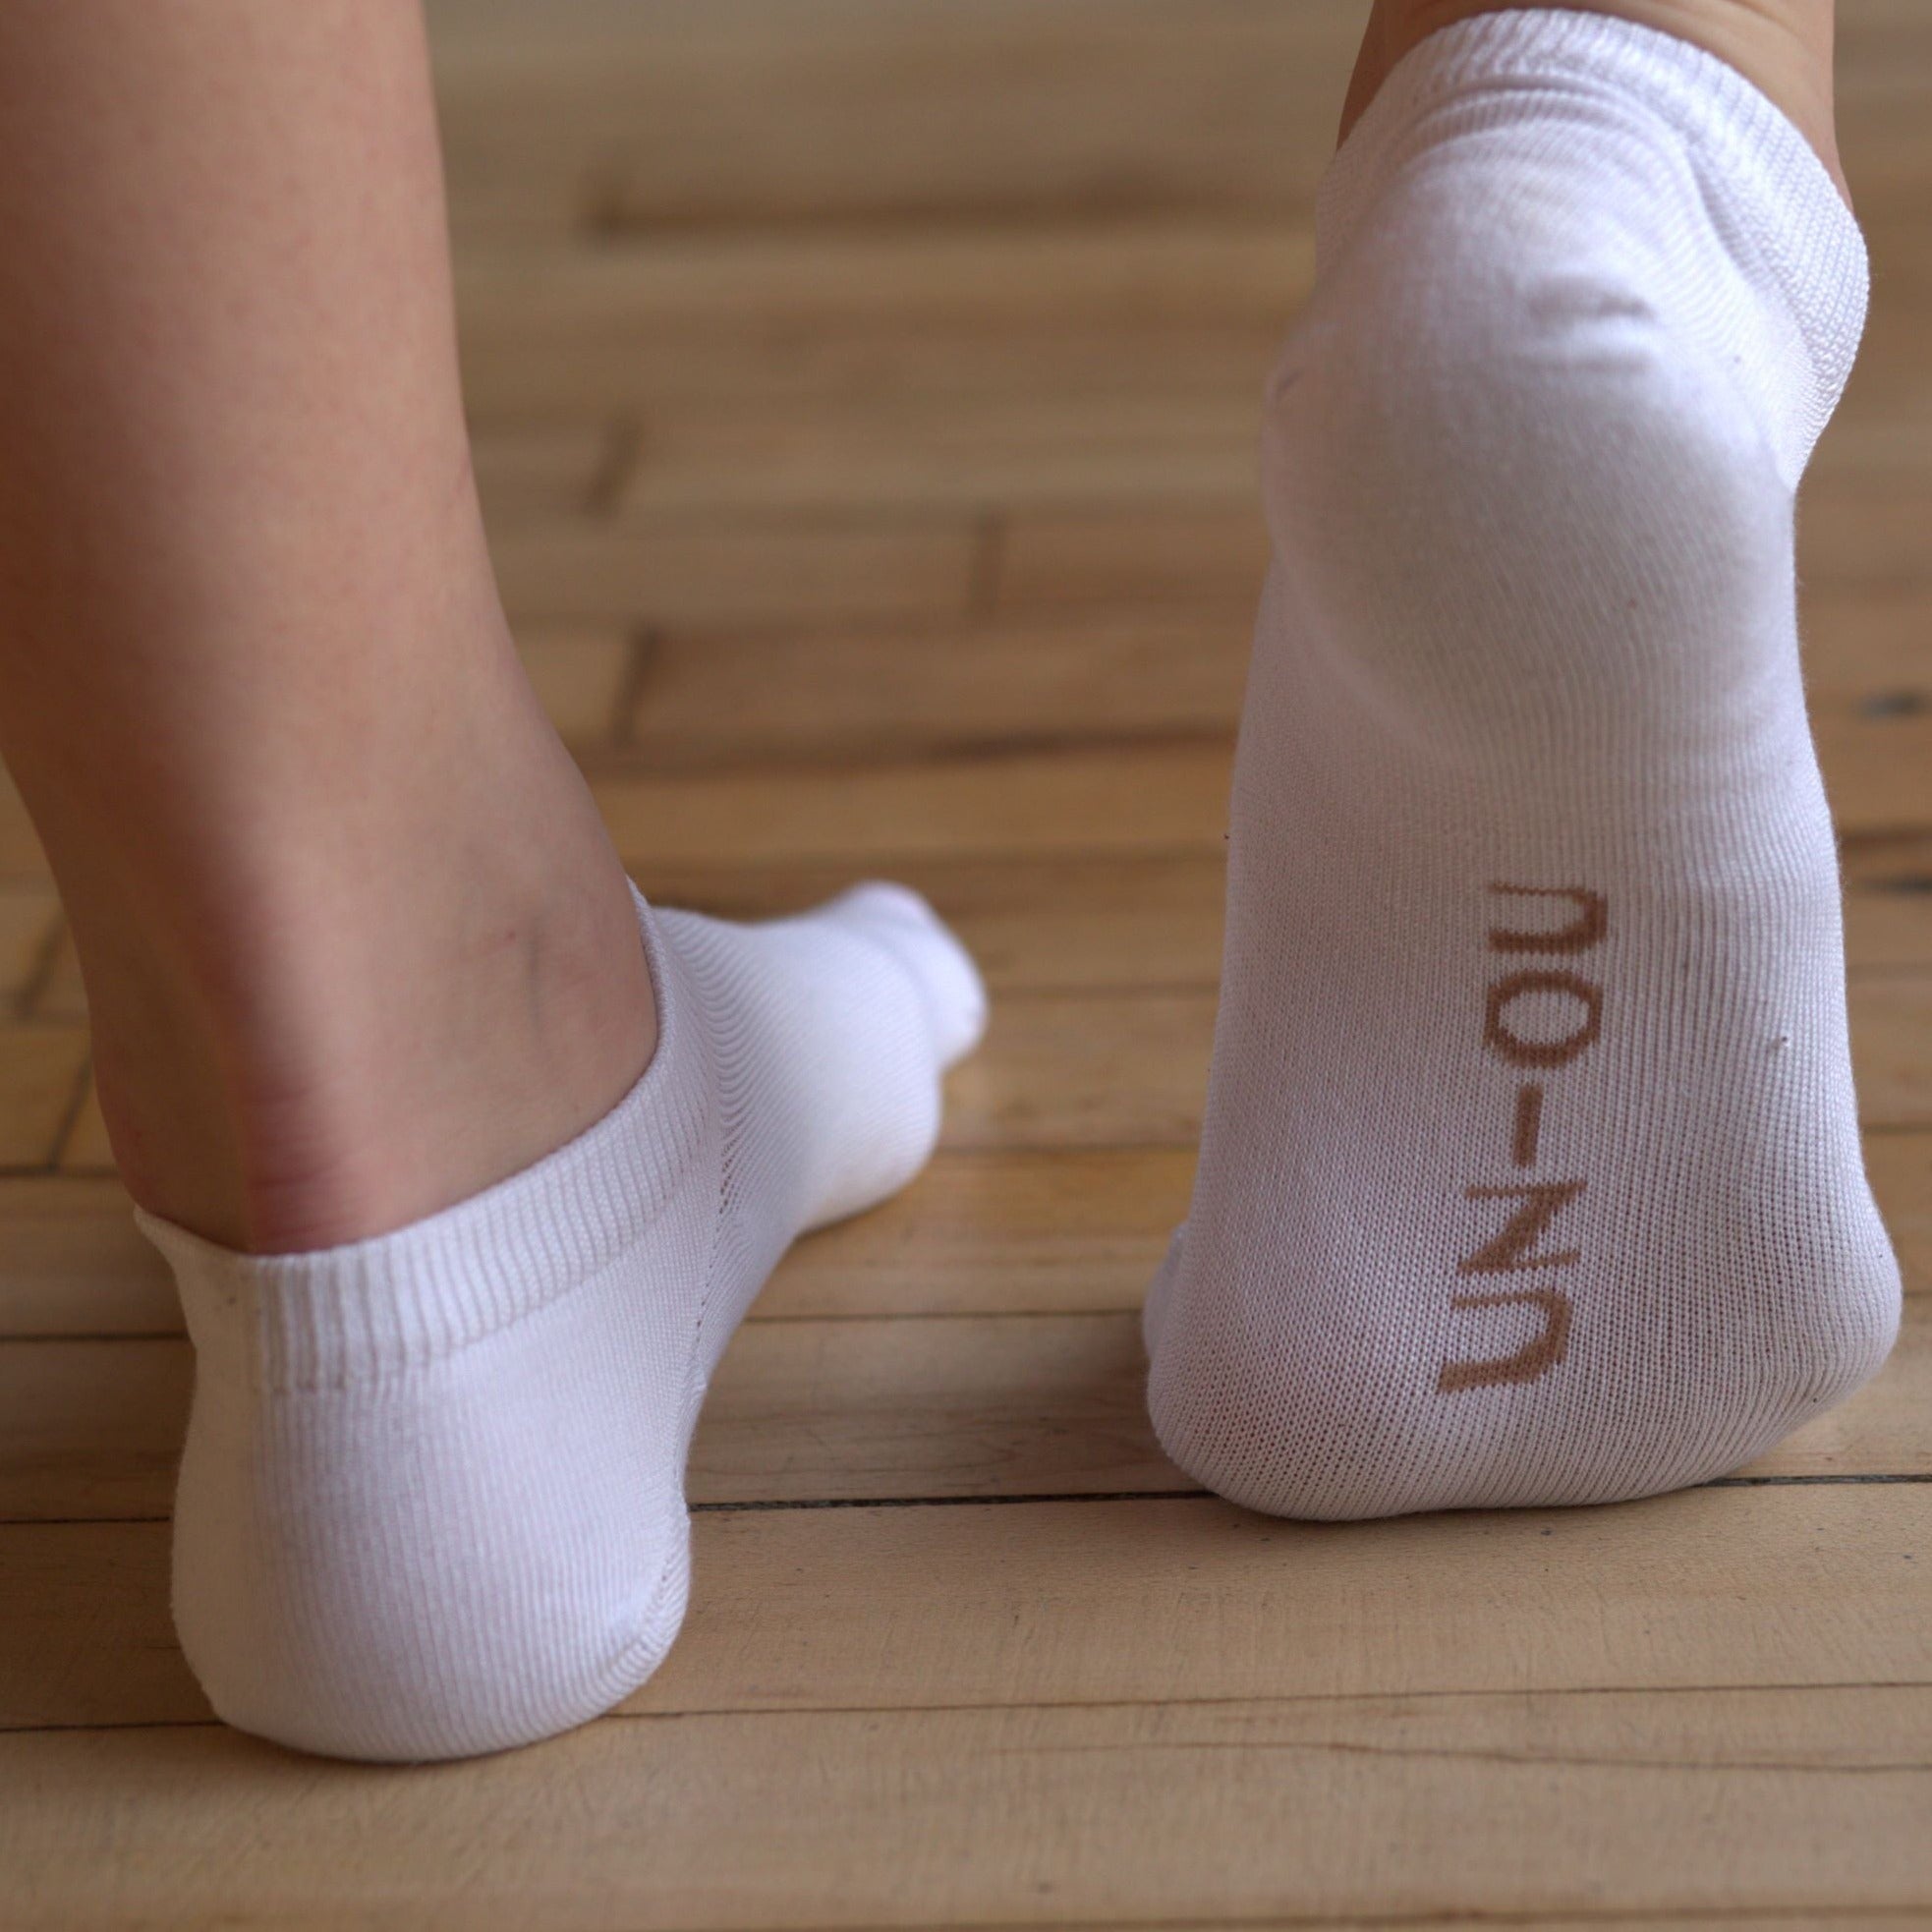 The Comfort White Socks